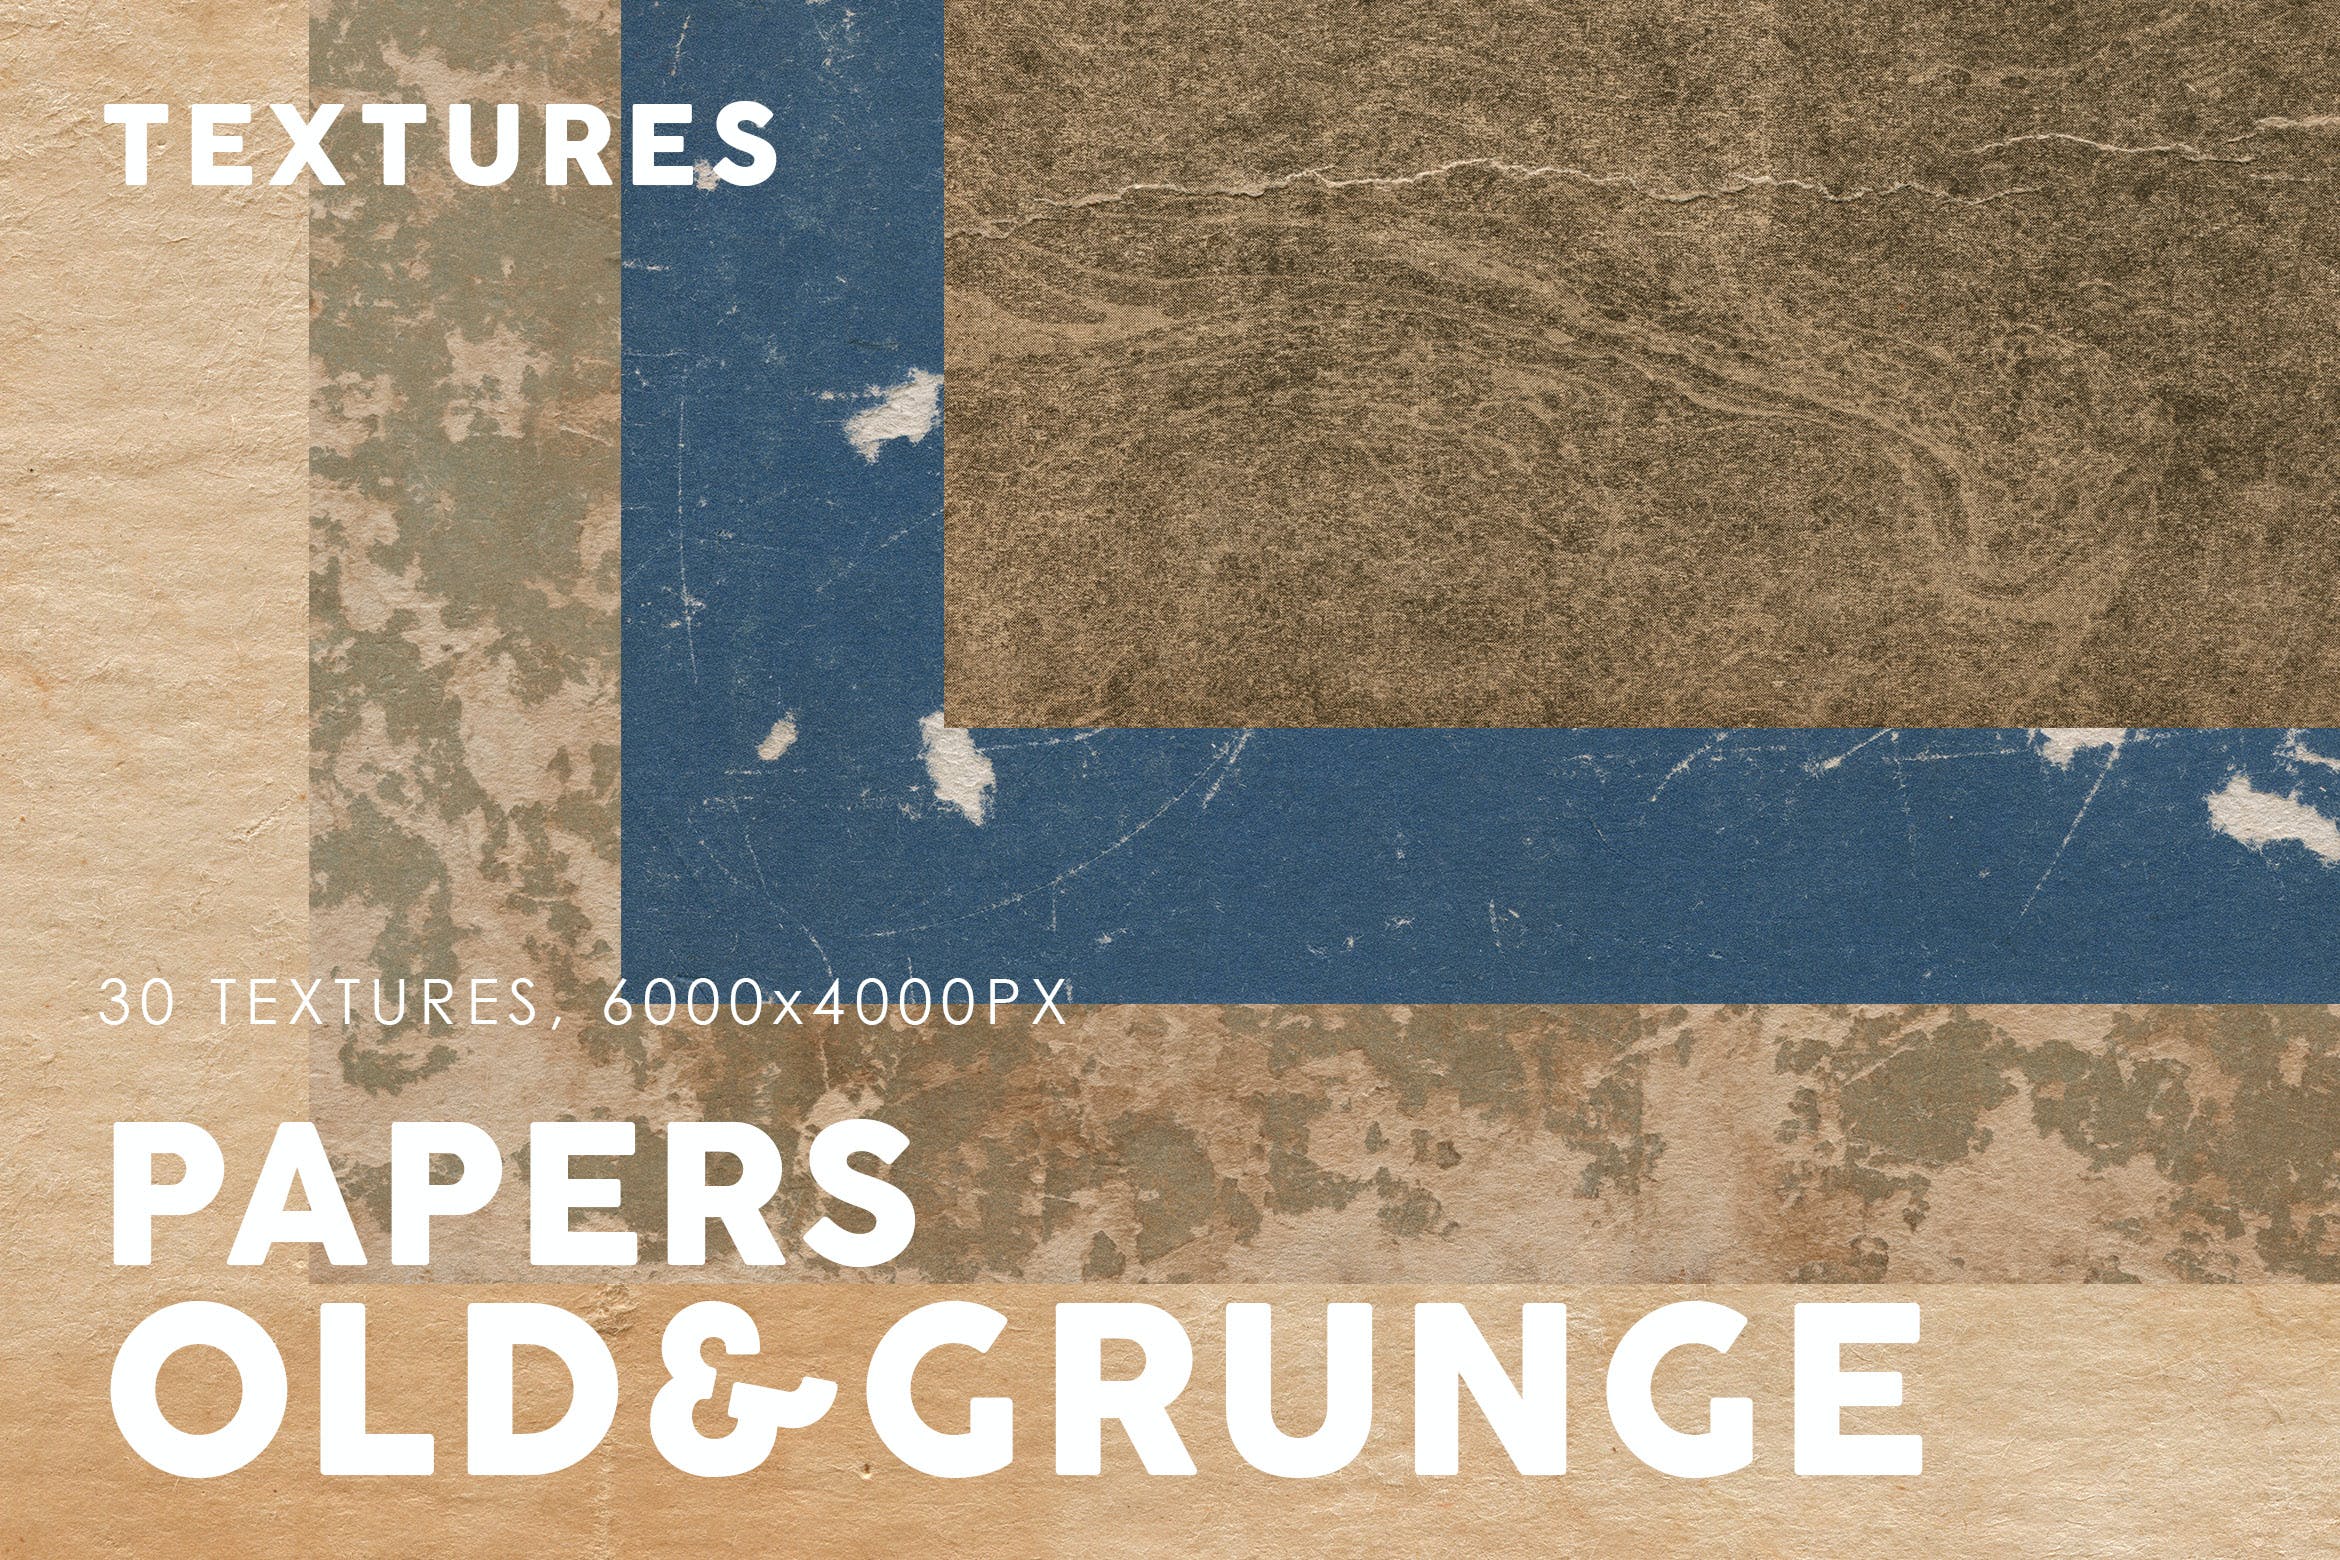 粗糙旧纸张纹理素材v3 Old & Grunge Paper Textures 3 图片素材 第1张